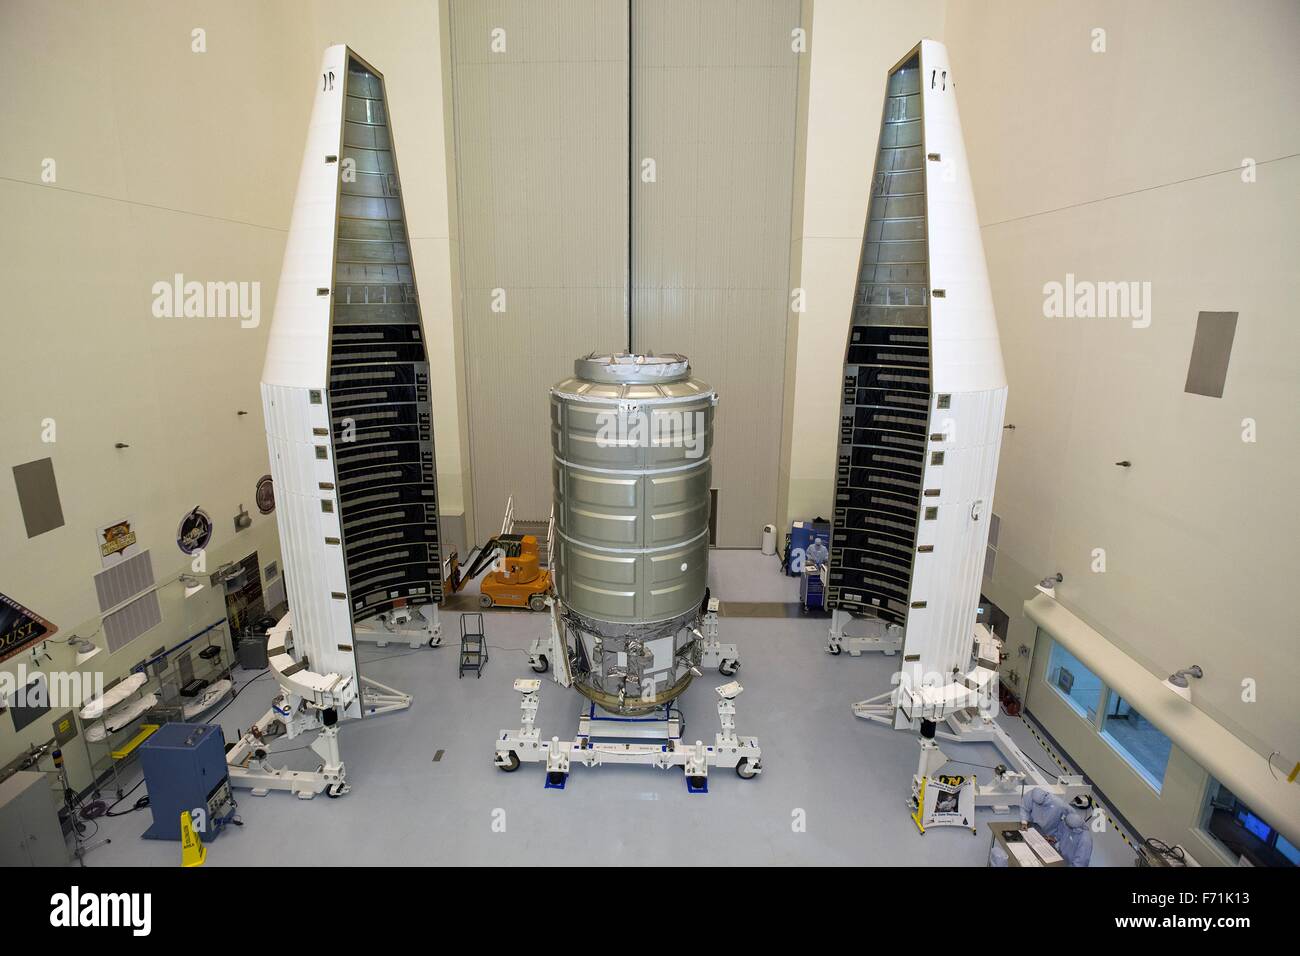 Gli ingegneri della NASA preparare per incapsulare gli orbitali ATK enhanced Cygnus navicella spaziale in un payload di protezione carenatura all'interno del payload pericoloso Impianto di manutenzione presso il Kennedy Space Center Novembre 16, 2015 a Cape Canaveral, in Florida. La carenatura fornirà una calotta aerodinamica per il veicolo spaziale come corre sulla cima di un regno lancio Alleanza Atlas V rocket in orbita su una missione per portare le forniture e le attrezzature per la Stazione Spaziale Internazionale. Foto Stock